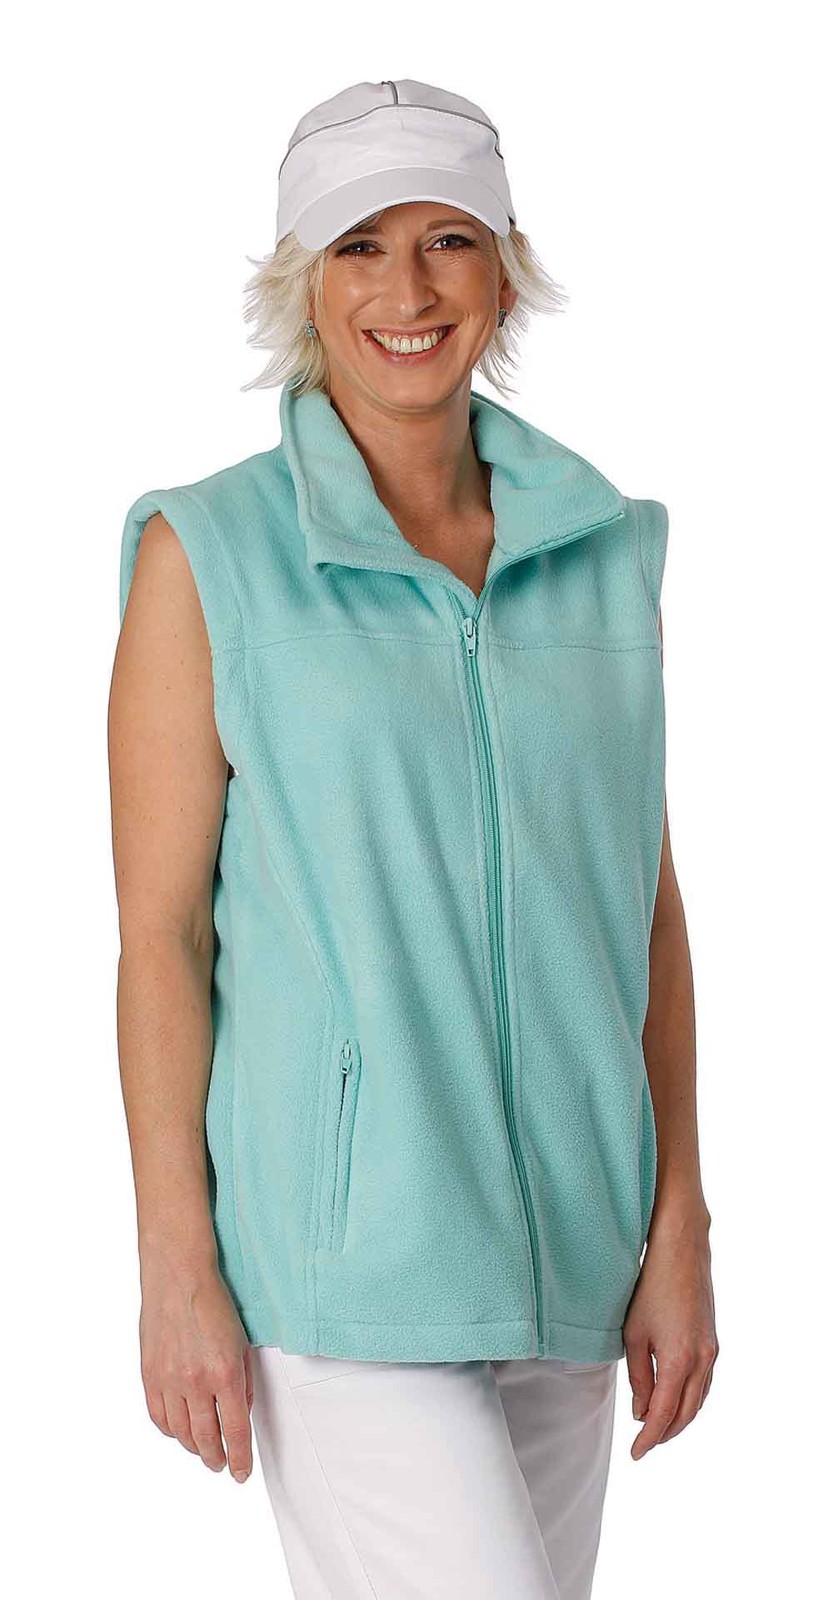 Fleece vesta Vorma Lady dámska - veľkosť: M, farba: zelená